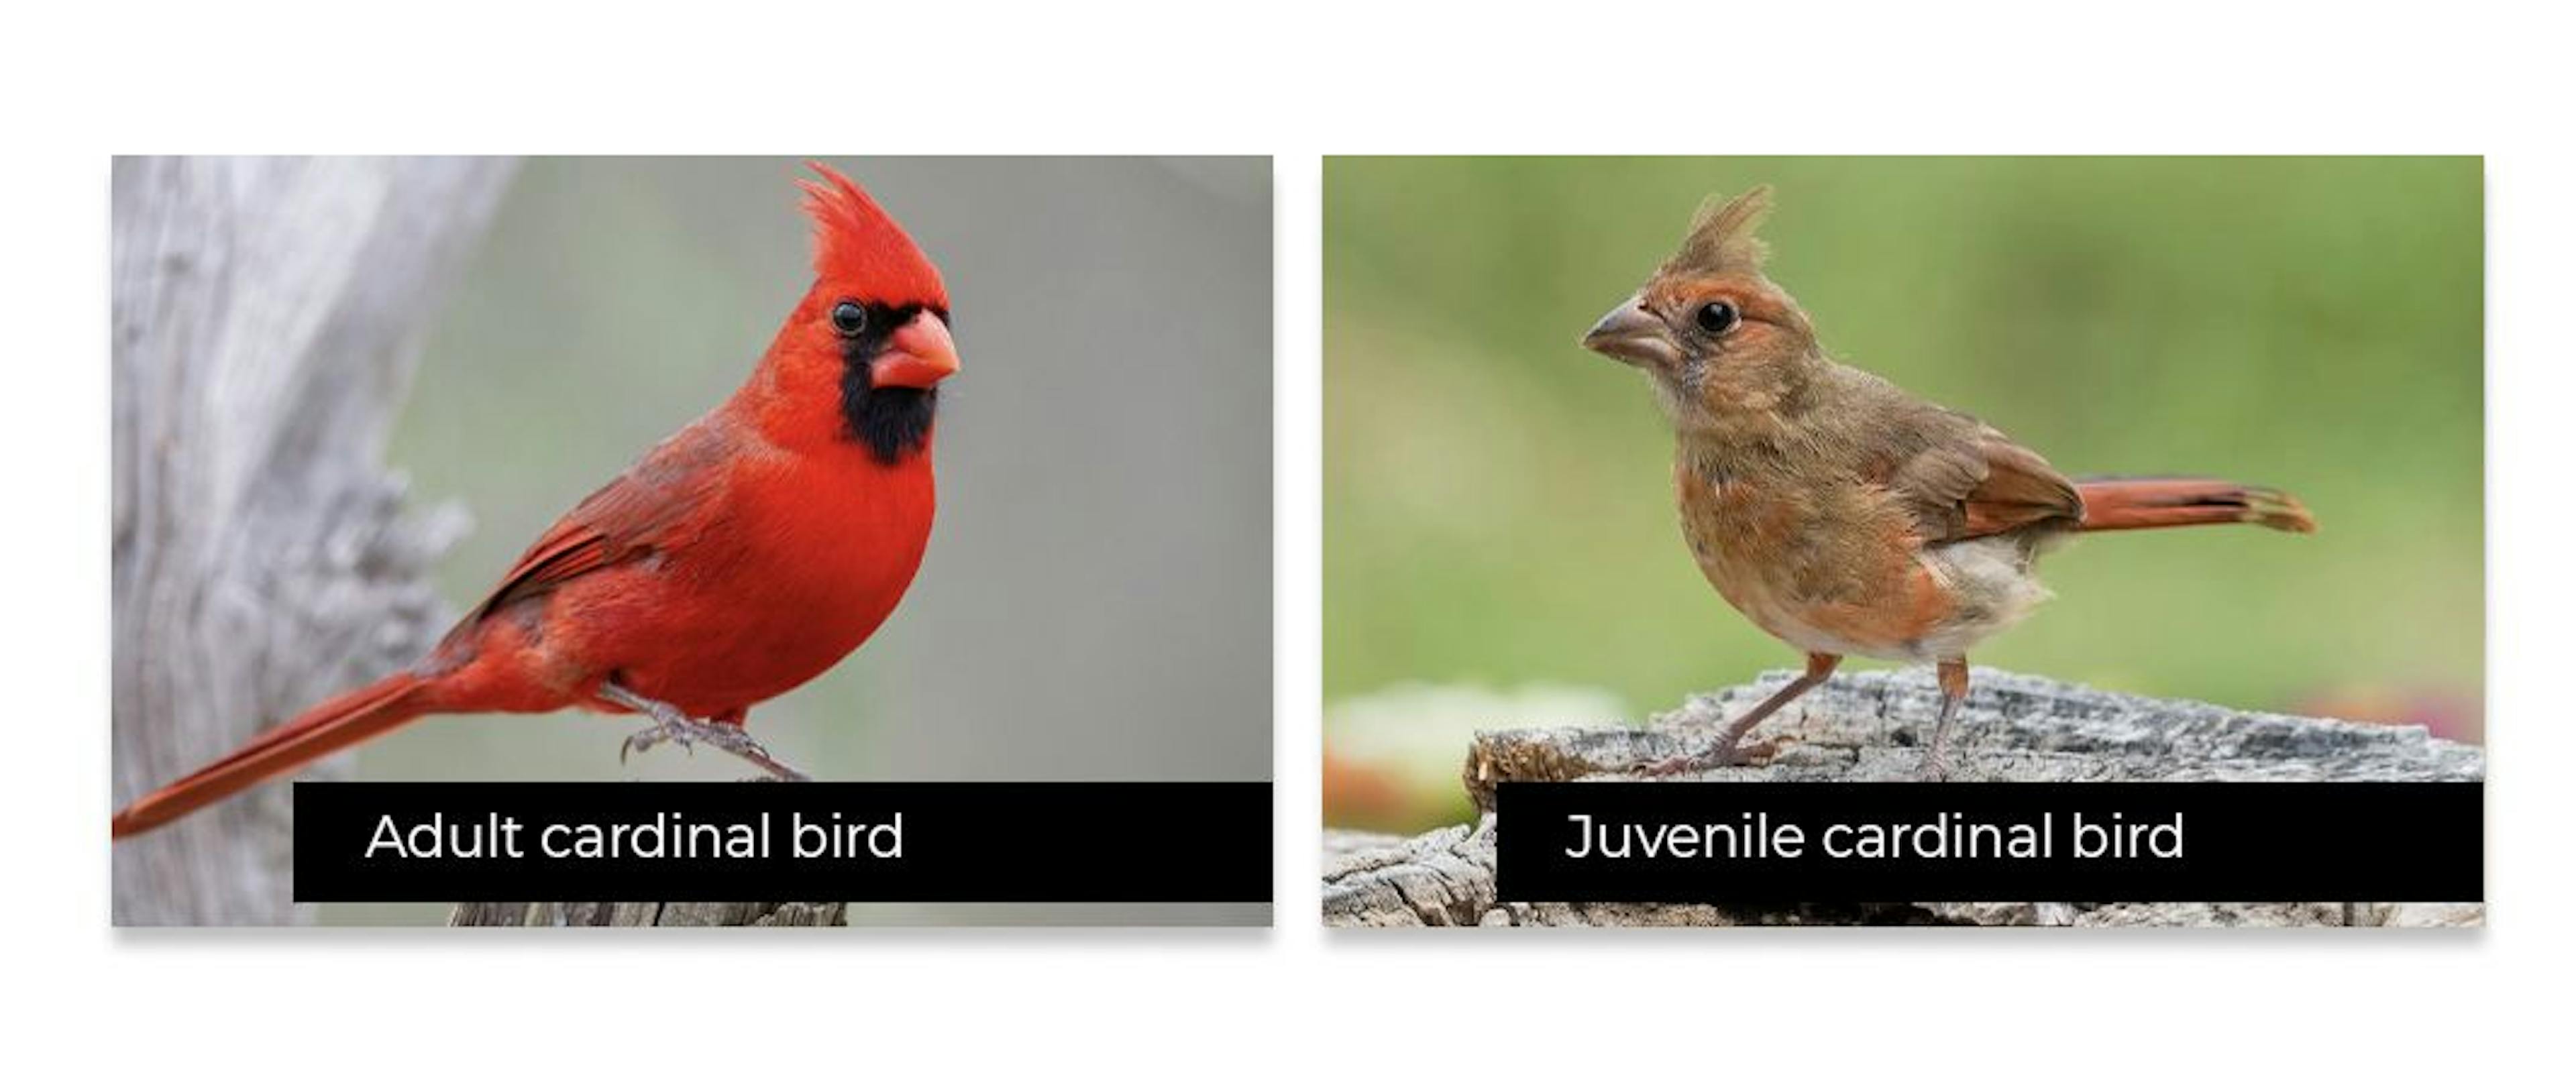 通常，幼鸟看起来与成年鸟完全不同